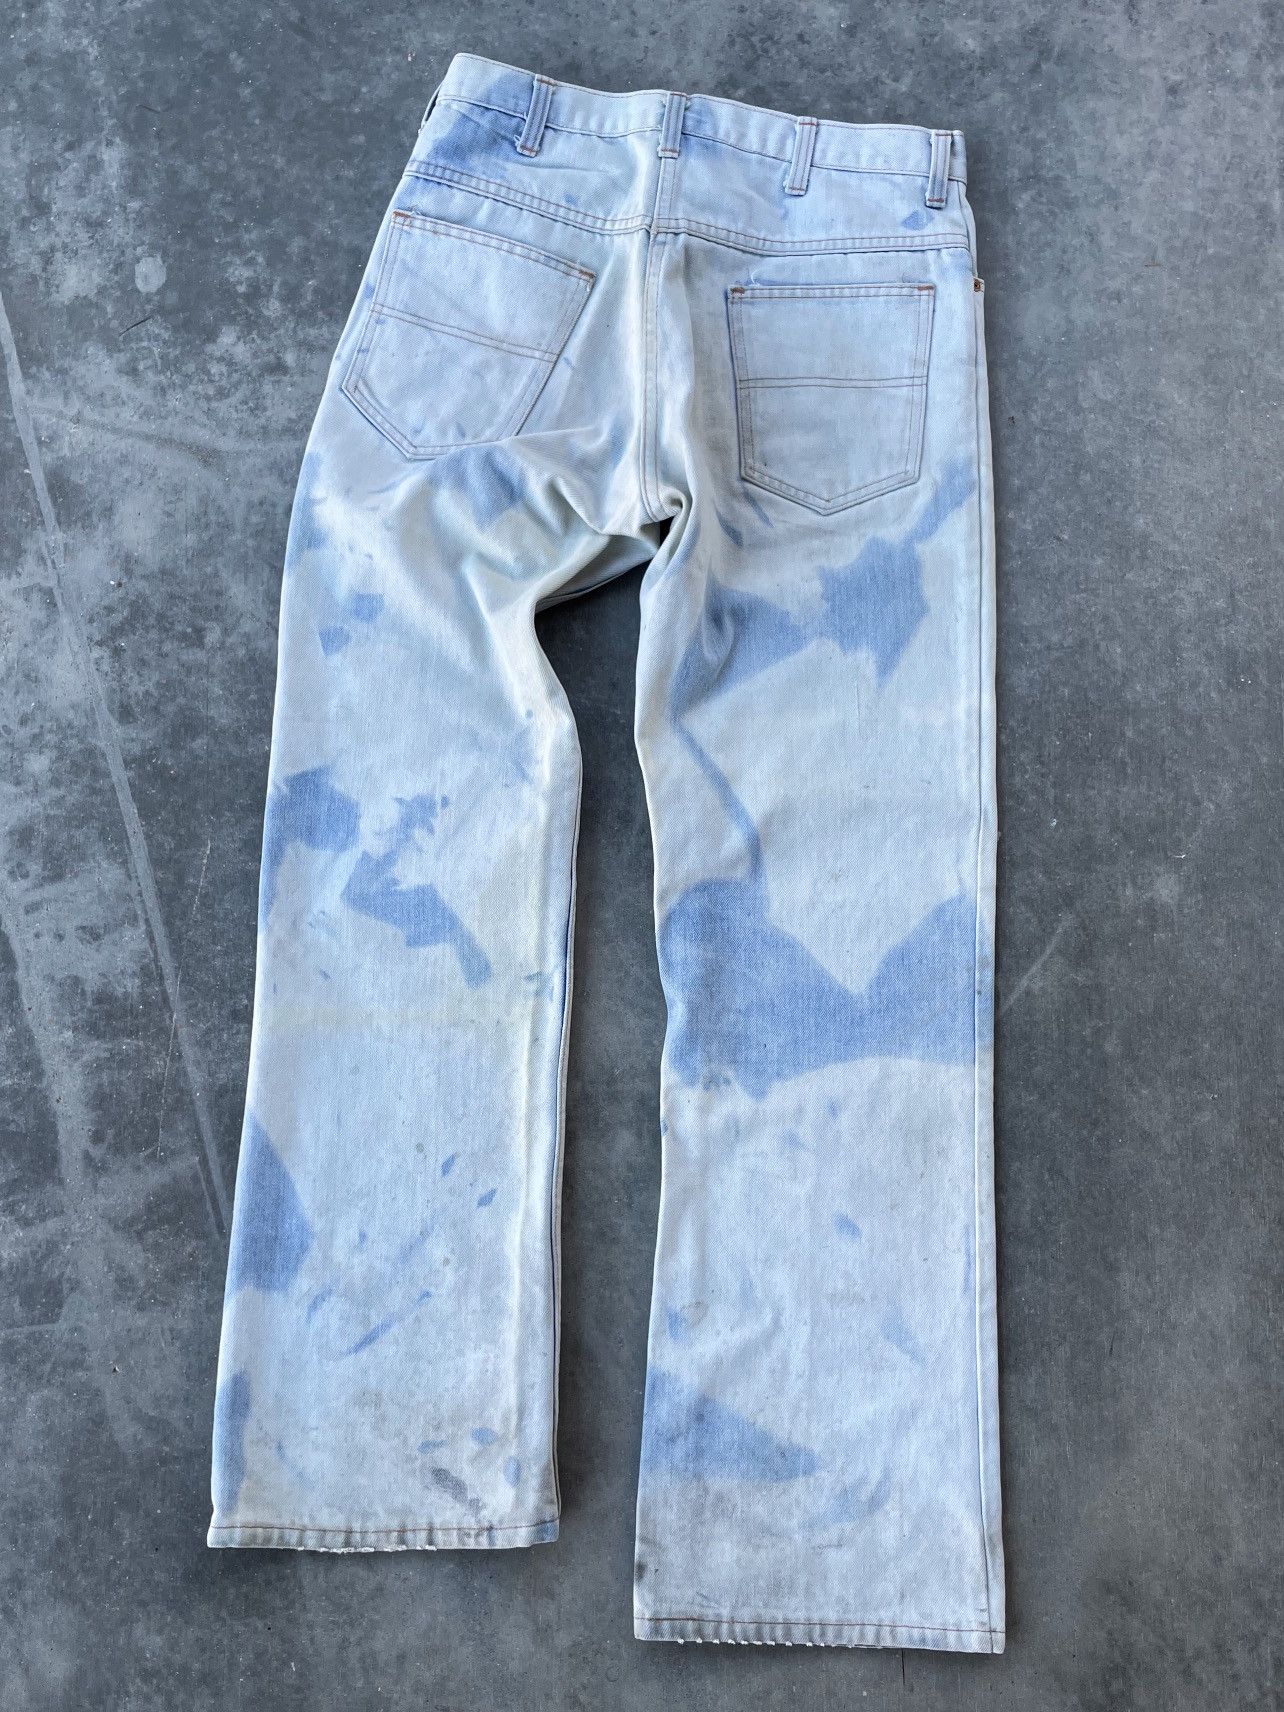 Vintage Vintage 70’s Sun Bleached Denim Jeans Size 32 Size US 32 / EU 48 - 2 Preview